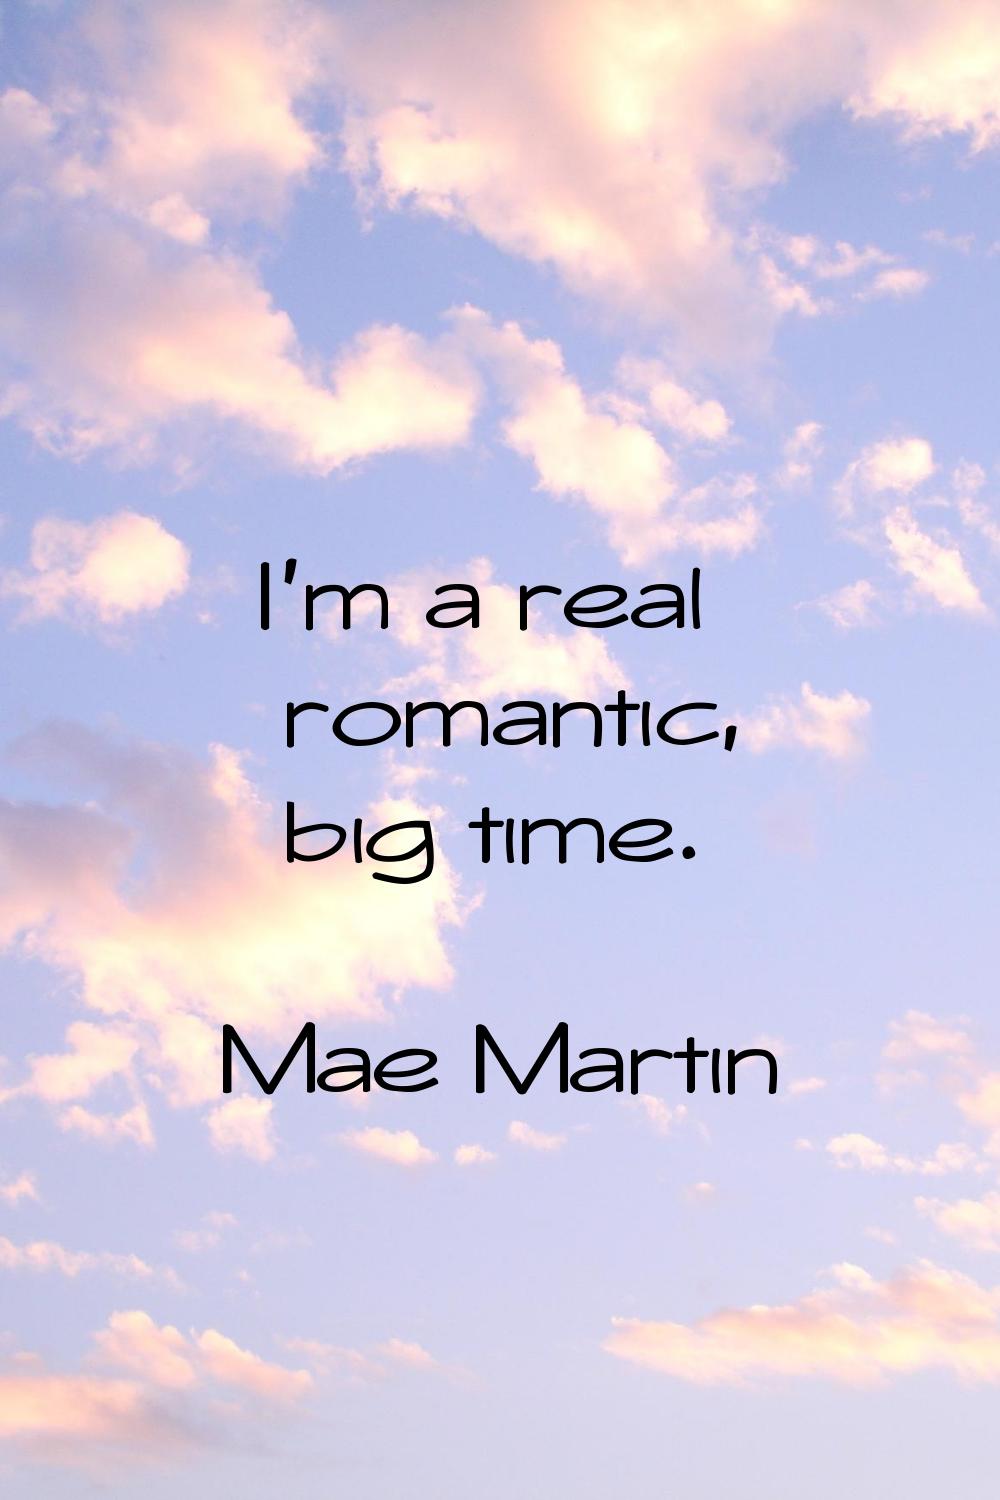 I'm a real romantic, big time.